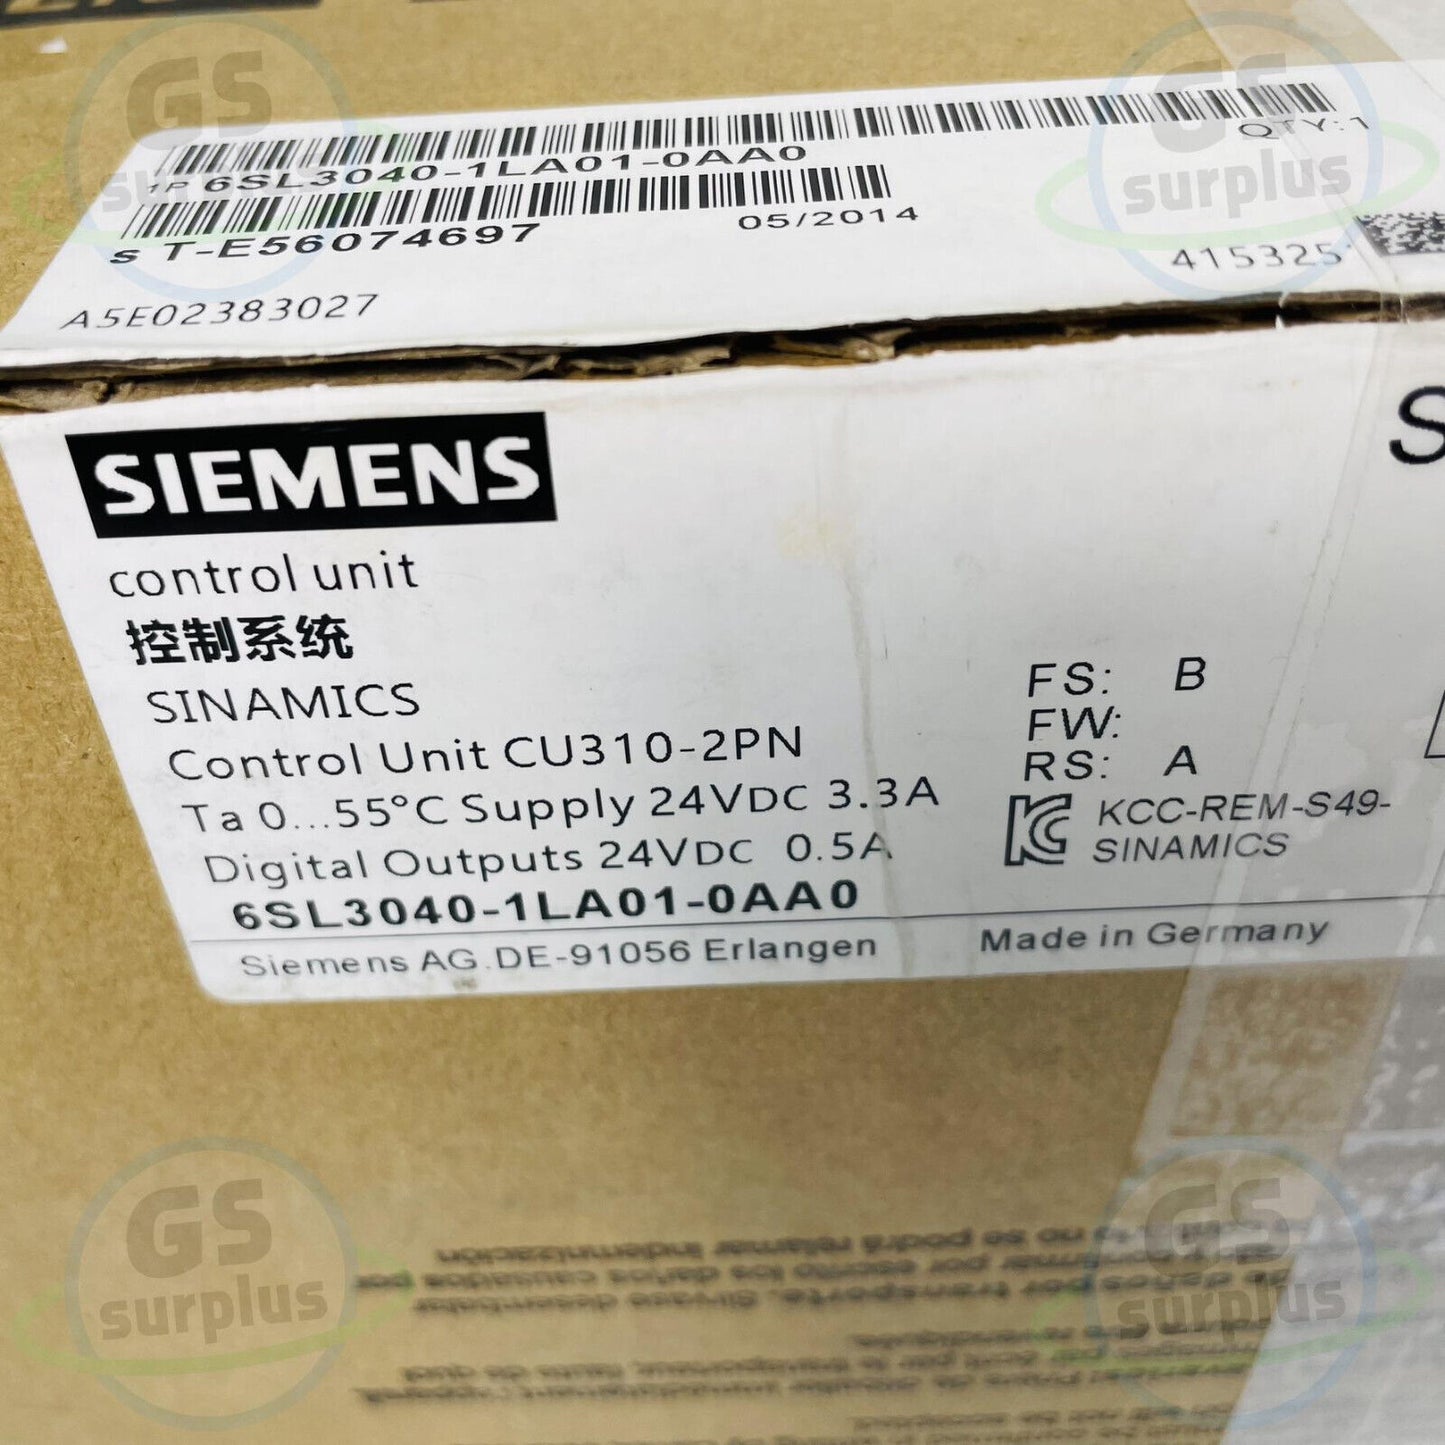 New SIEMENS 6SL3040-1LA01-0AA0 SINAMICS S120 CONTROL UNIT CU310-2 PN